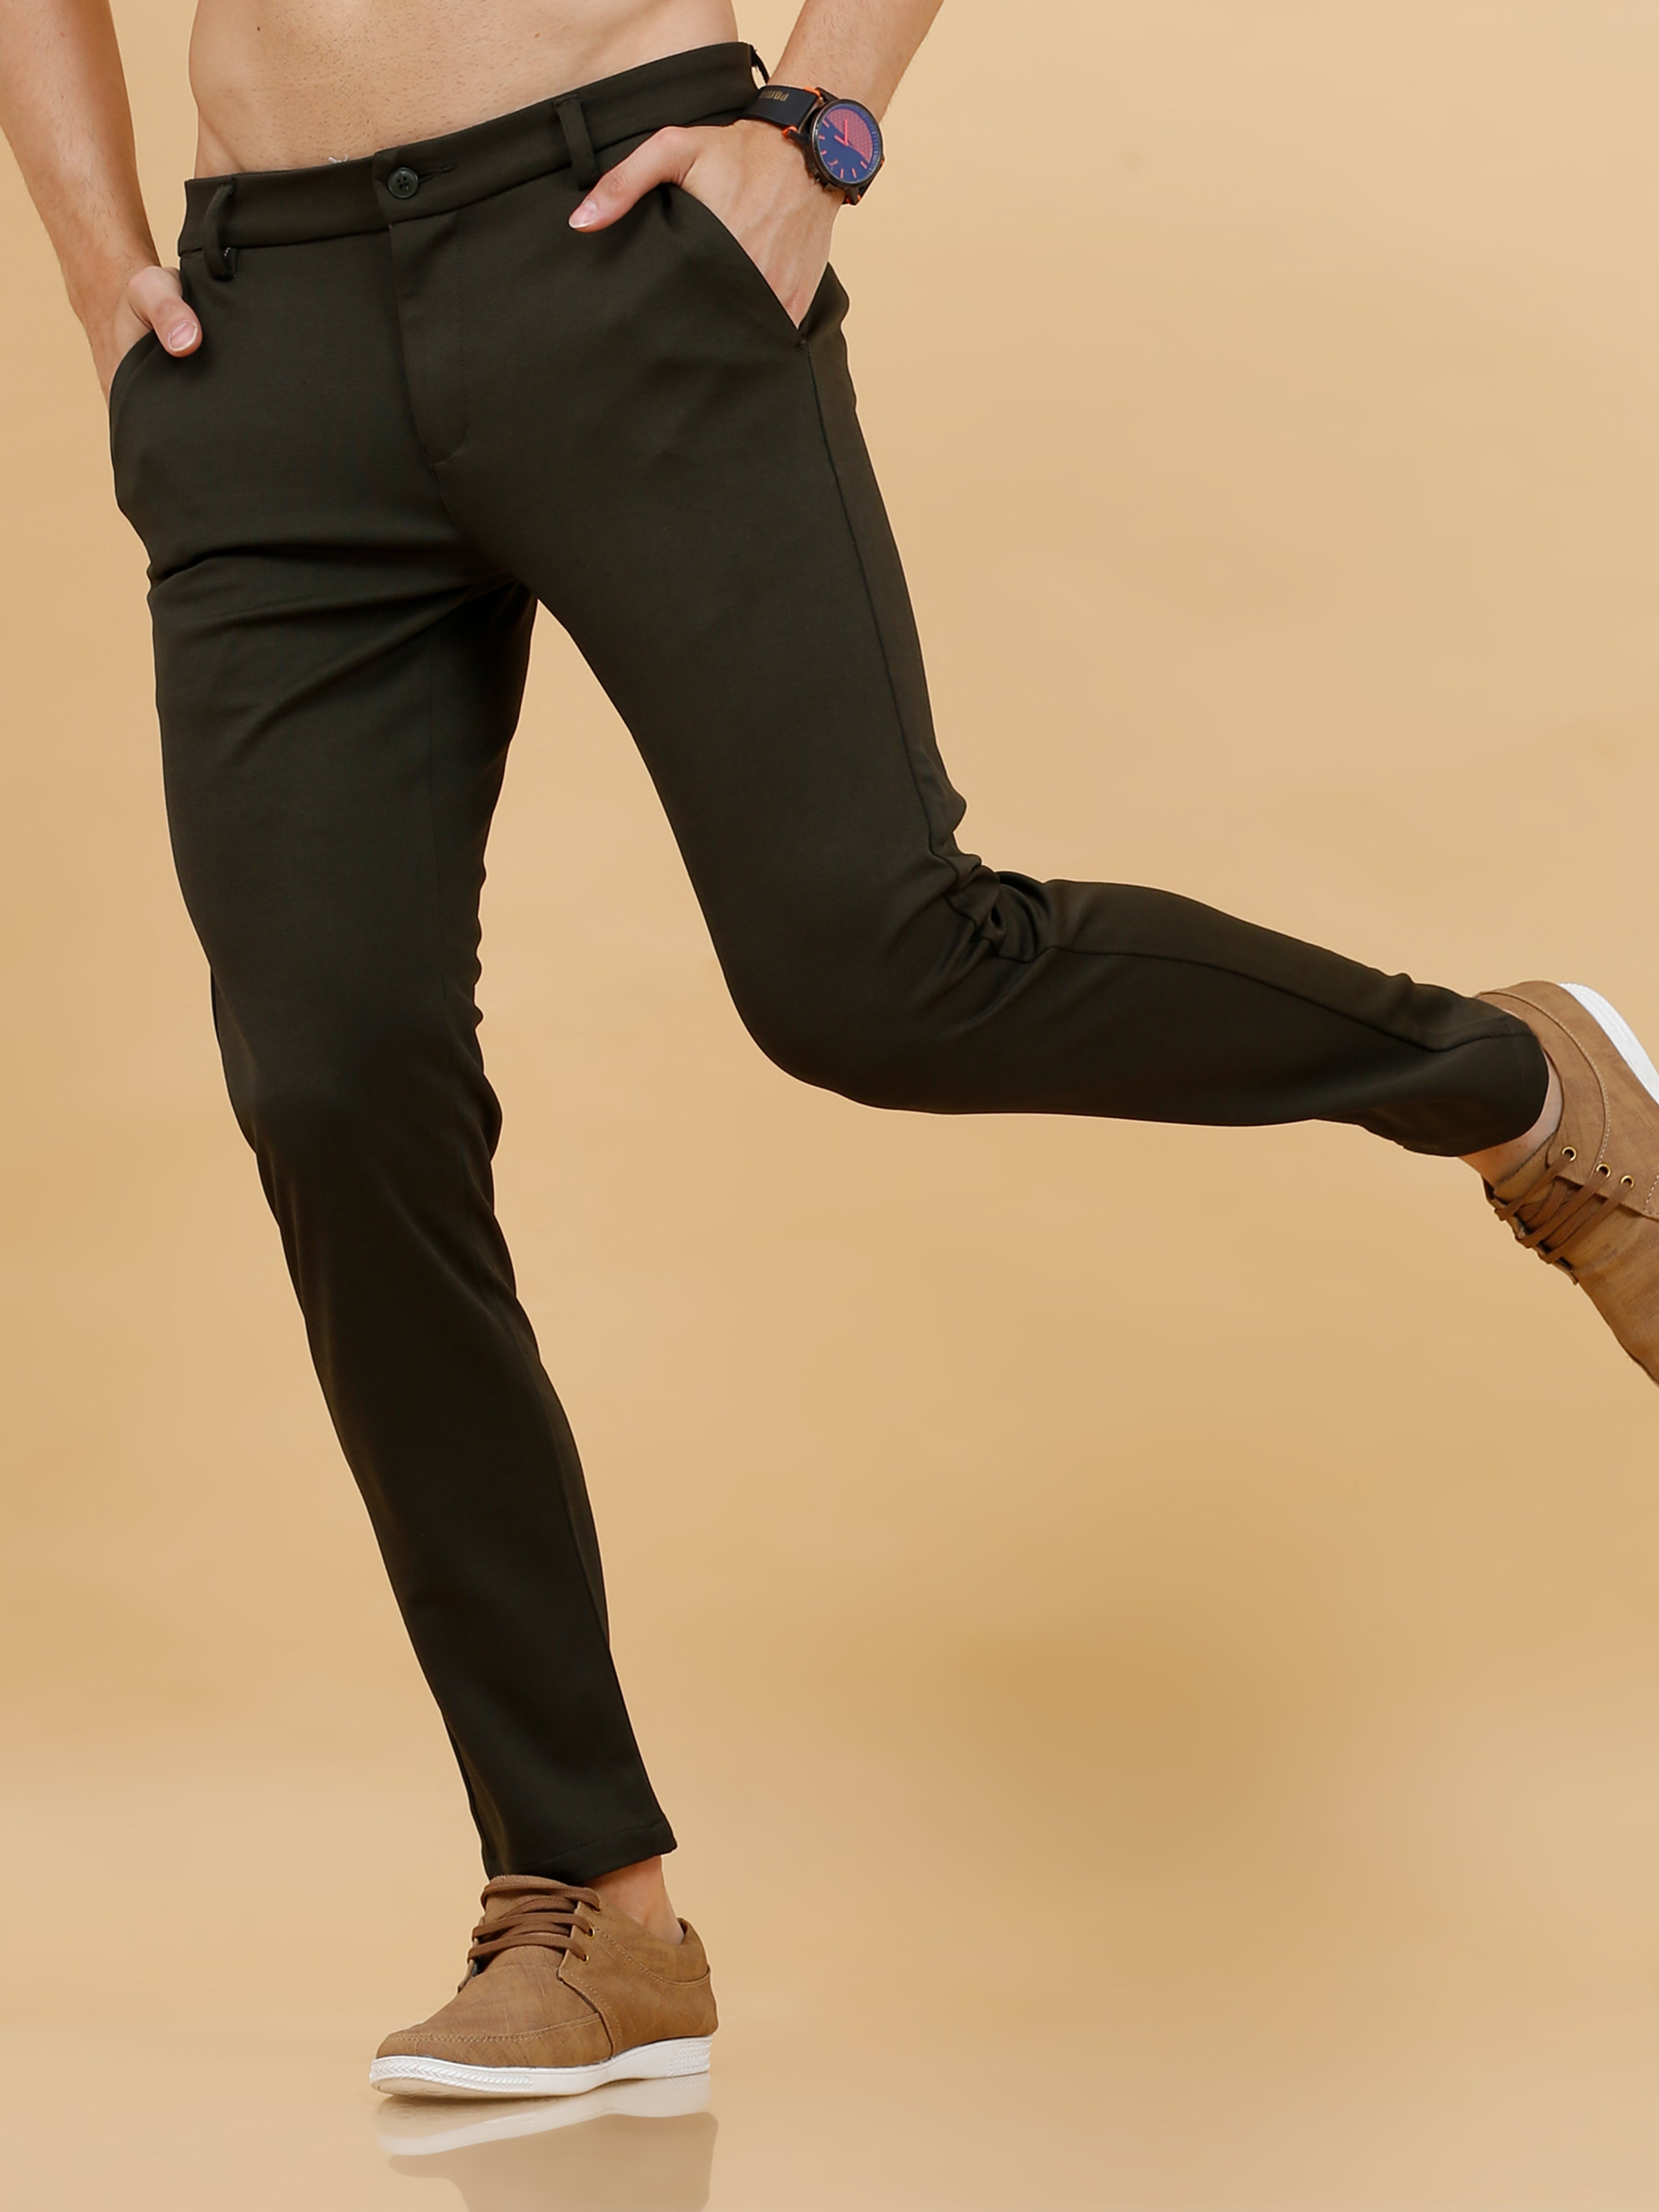 Men's Semi Formal Black Lycra Shirt and Trouser Combo - Evilato